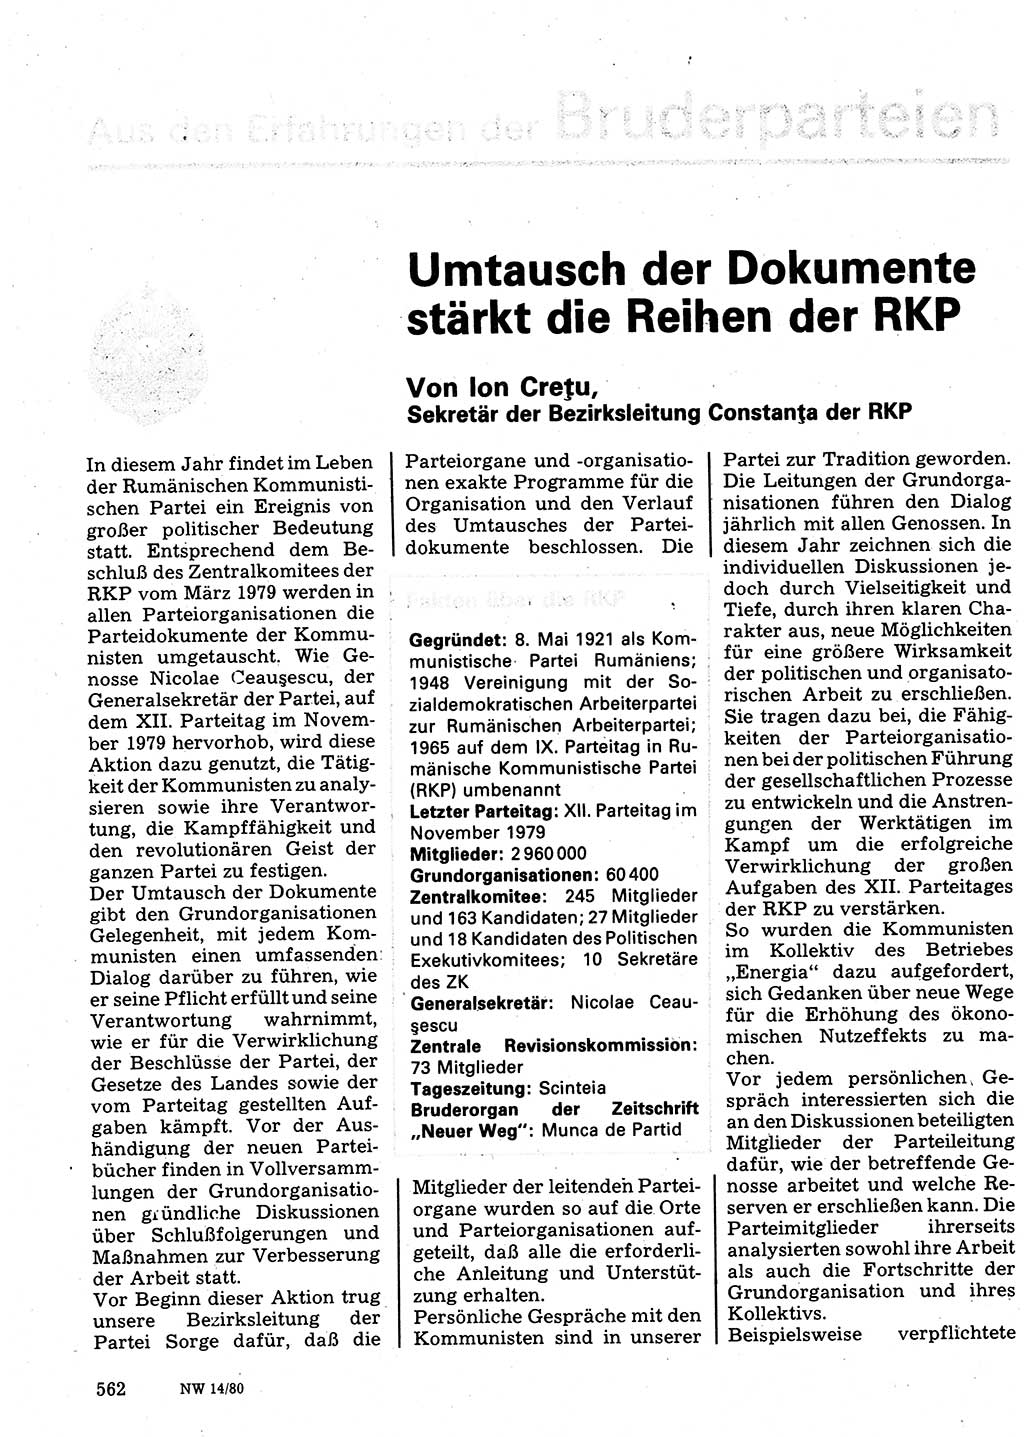 Neuer Weg (NW), Organ des Zentralkomitees (ZK) der SED (Sozialistische Einheitspartei Deutschlands) für Fragen des Parteilebens, 35. Jahrgang [Deutsche Demokratische Republik (DDR)] 1980, Seite 562 (NW ZK SED DDR 1980, S. 562)